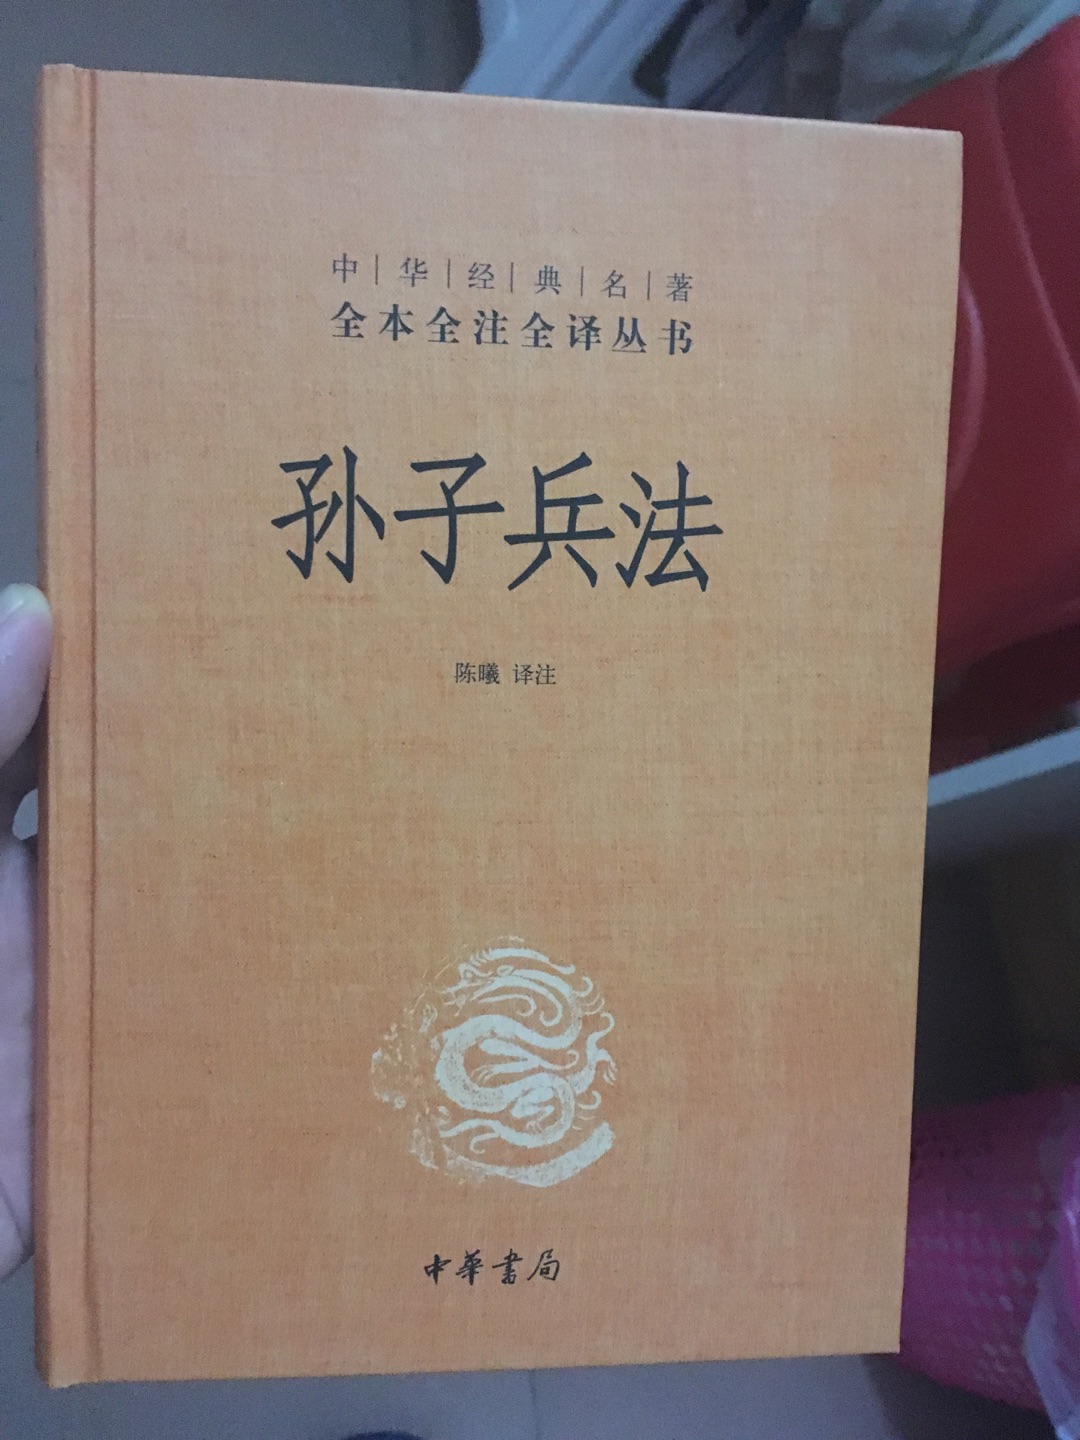 很好的一本书，外观很别致，中华书局的书，值得信赖！